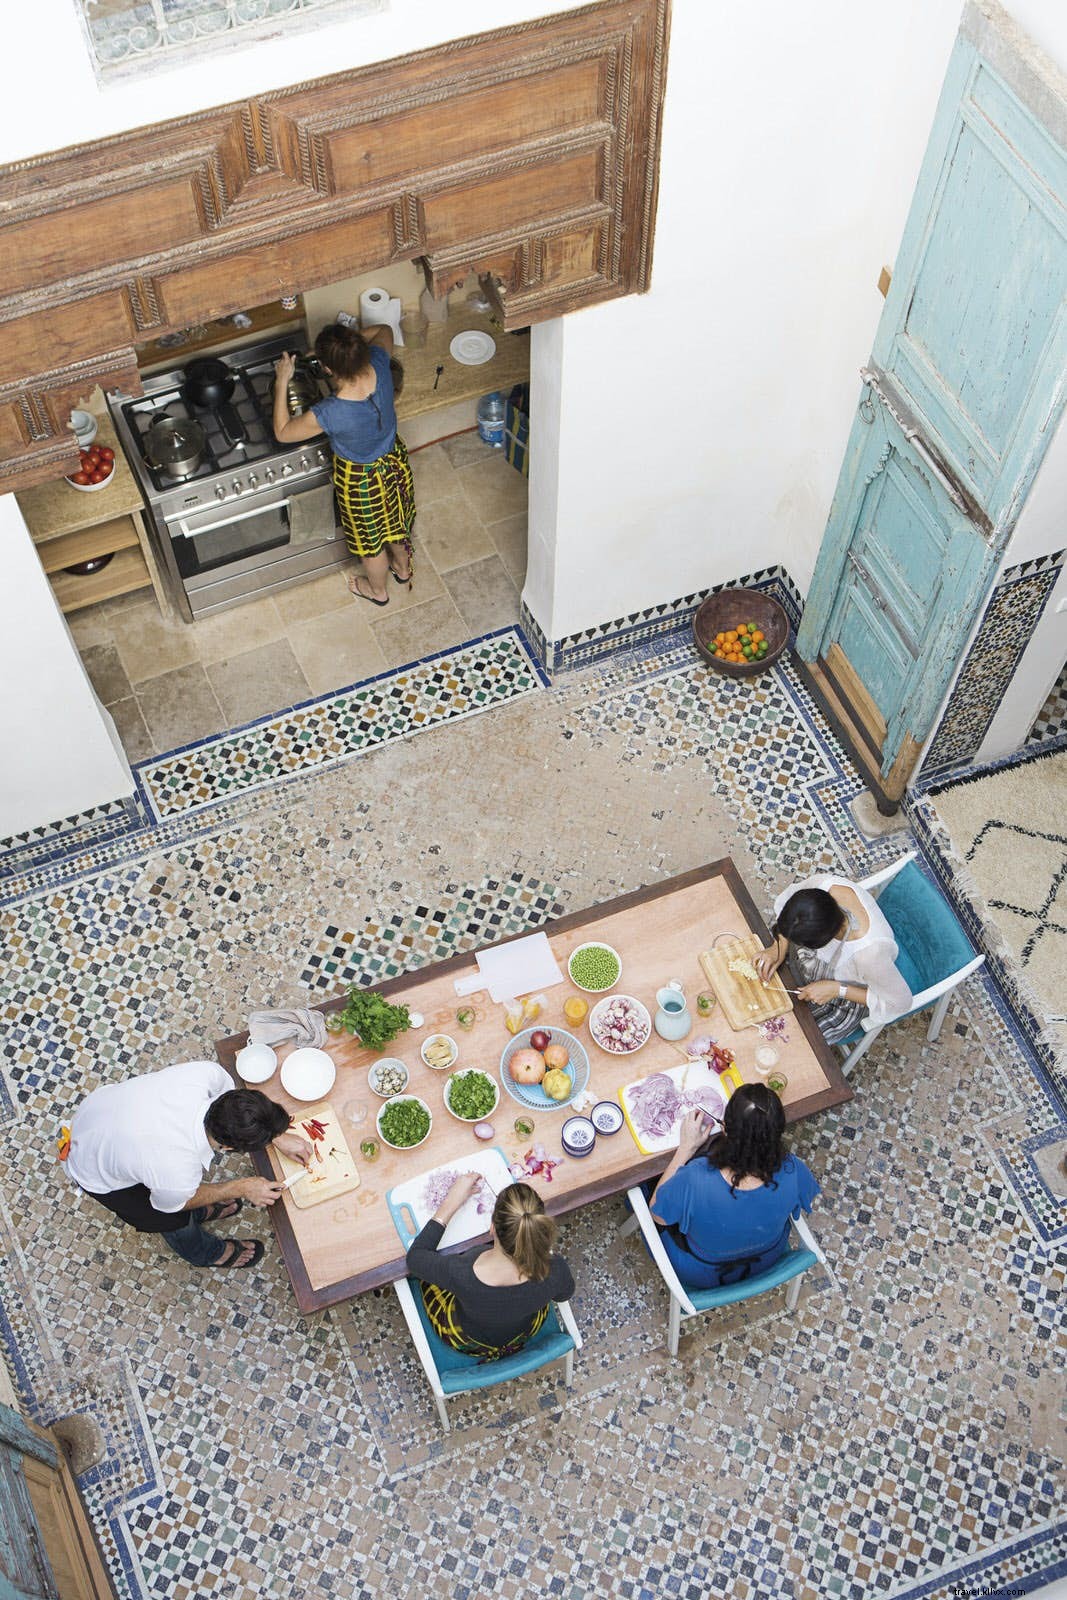 En suivant le sentier gourmand de Fès, La capitale culinaire du Maroc 